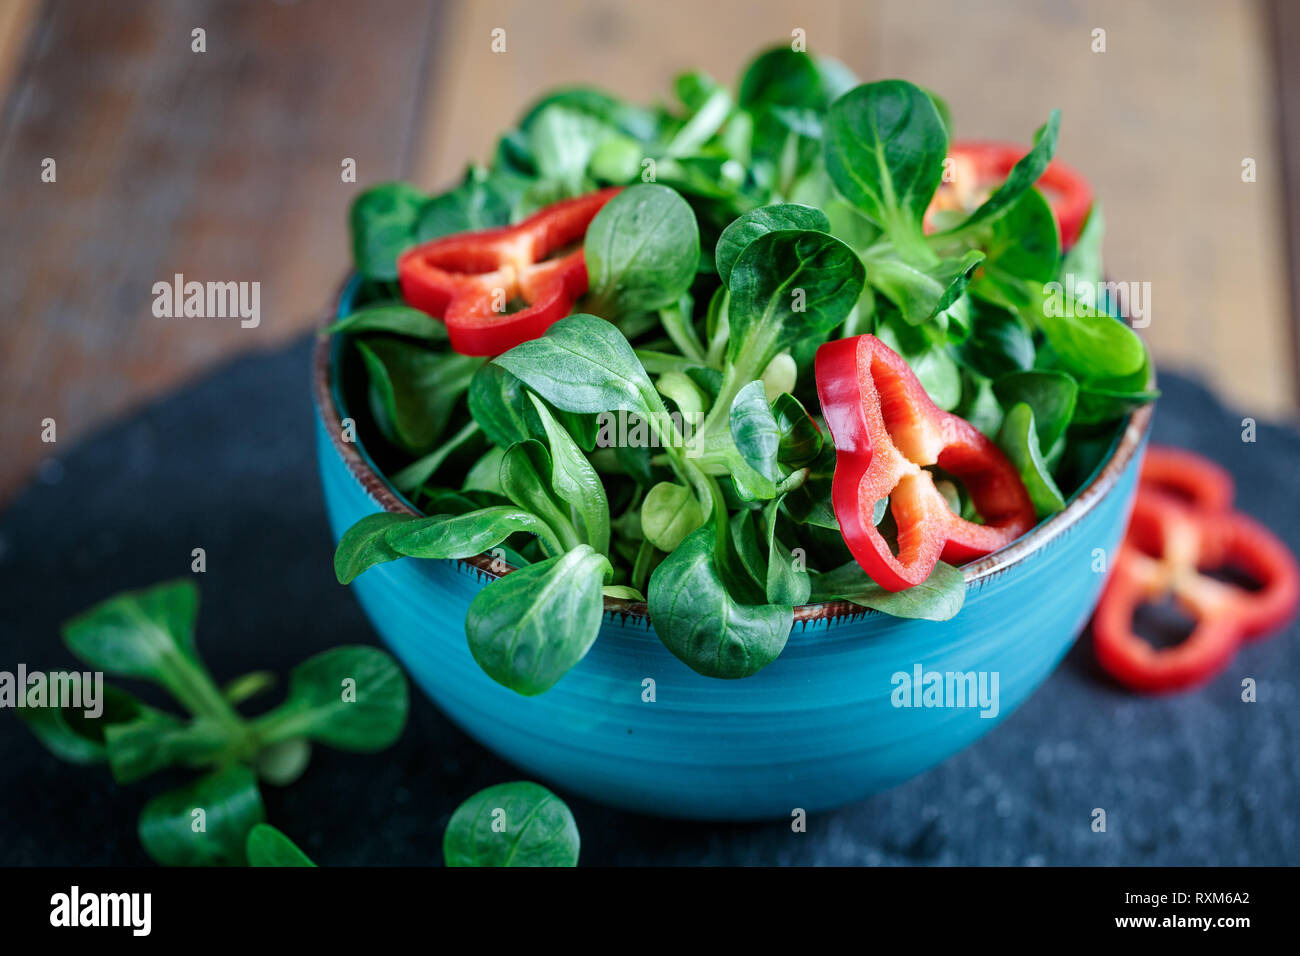 Foto de estudio de maíz verde fresca ensalada con pimiento paprika anillos Foto de stock